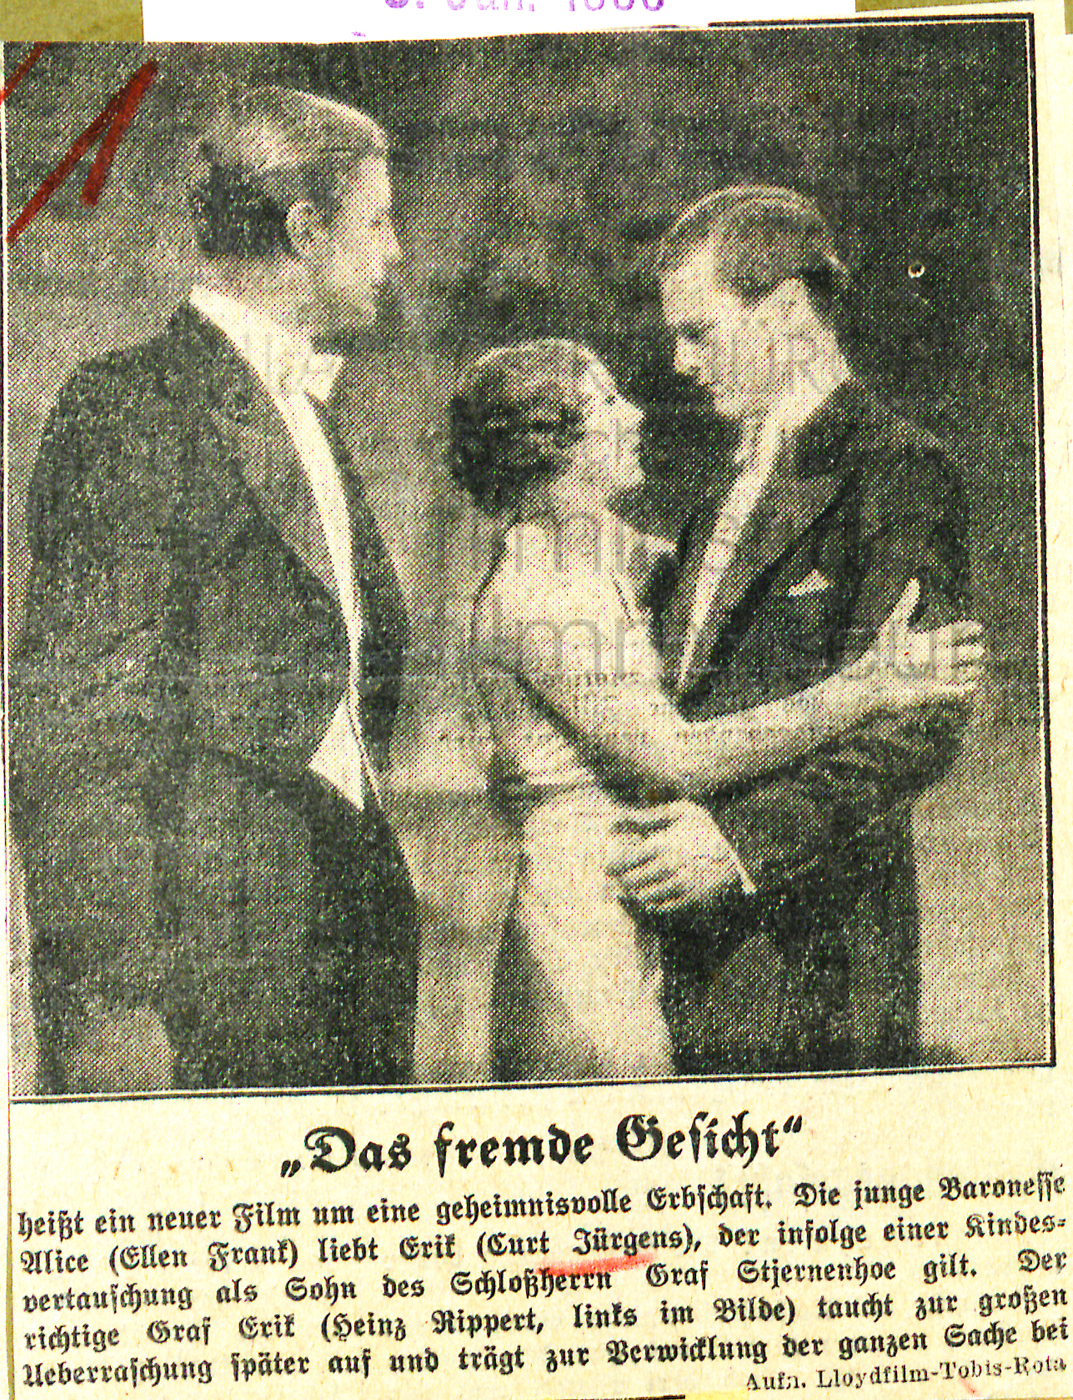 Nachtausgabe Berlin: "Das fremde Gesicht", 3.1.1936